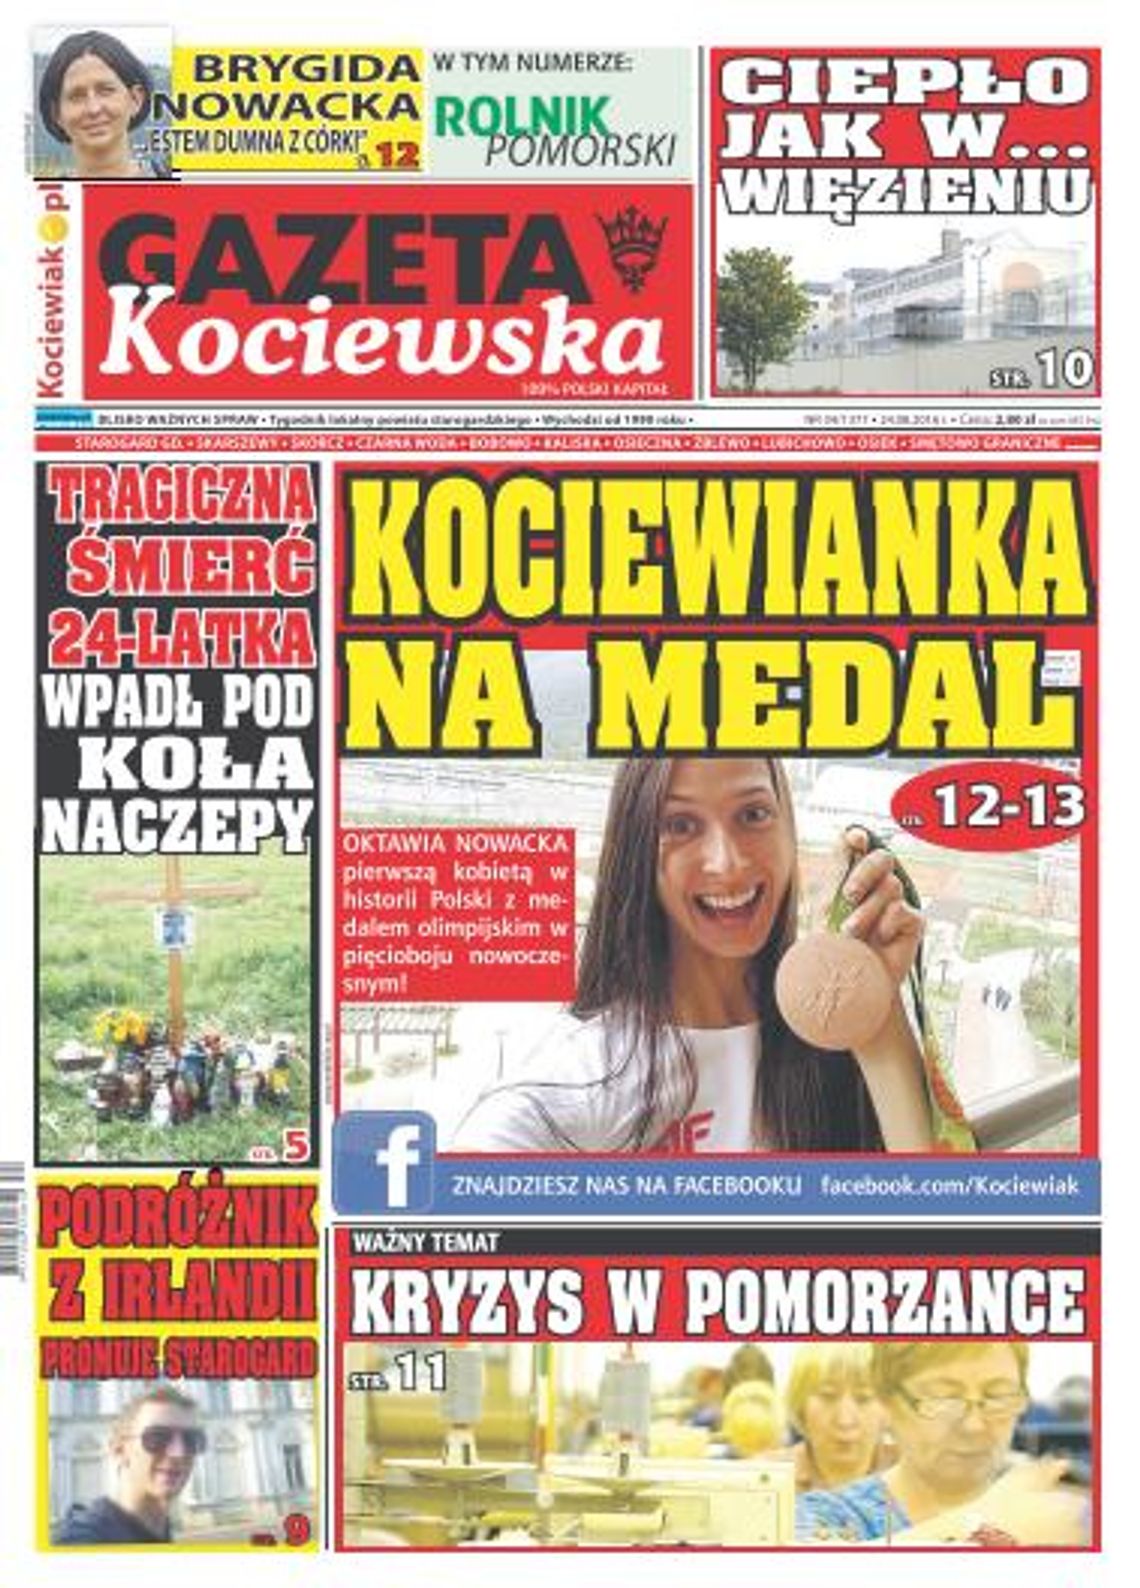 Najnowsza Gazeta Kociewska już w kioskach!